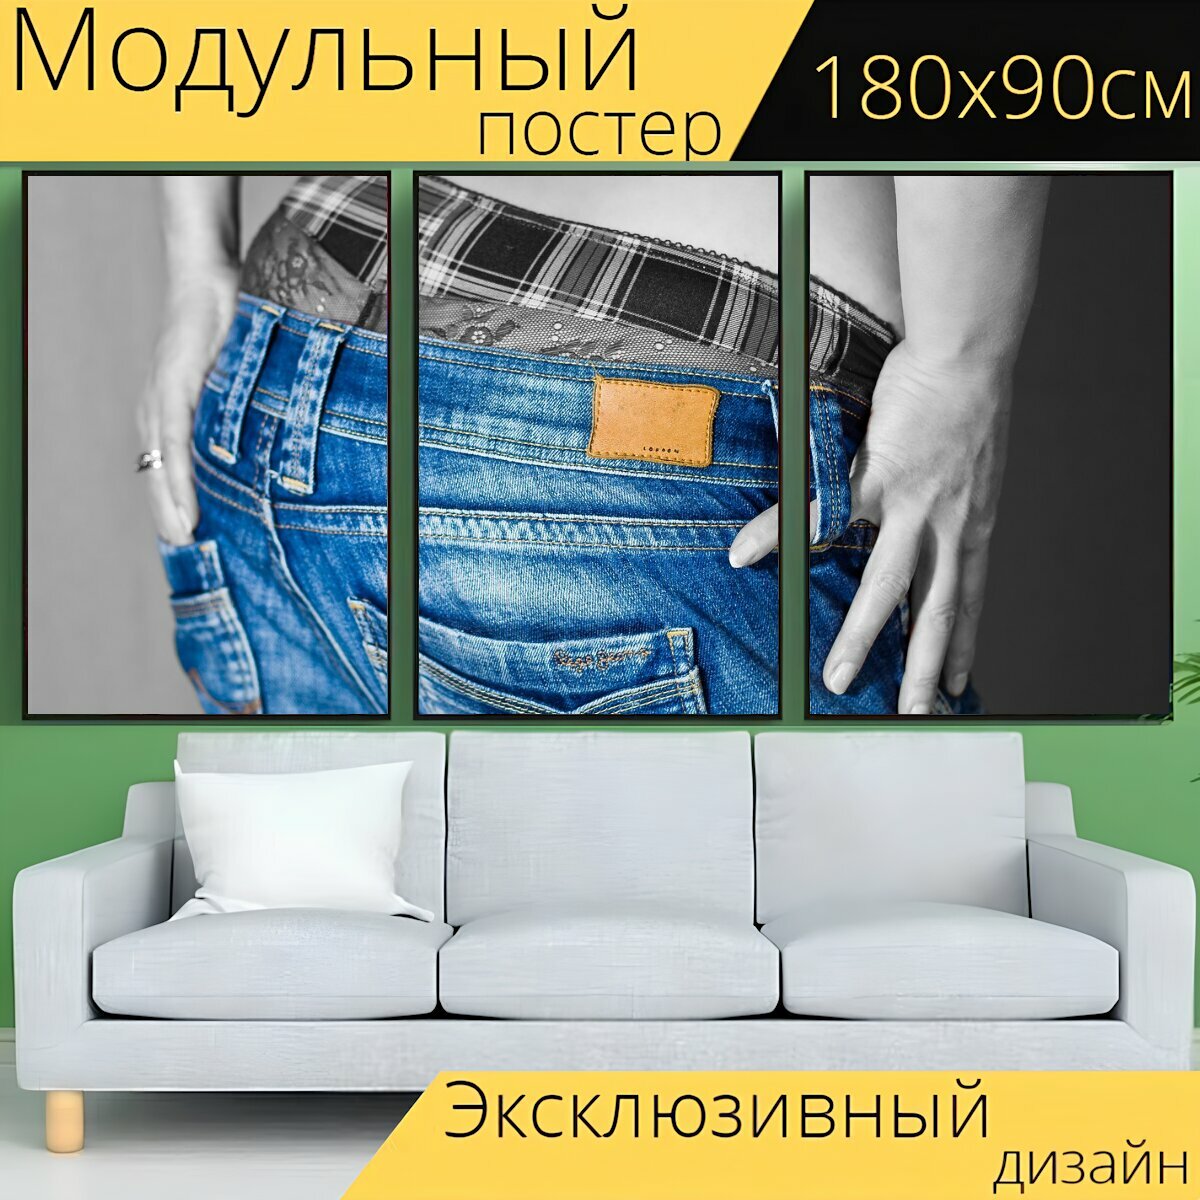 Модульный постер "Джинсы, женское белье, синие джинсы" 180 x 90 см. для интерьера